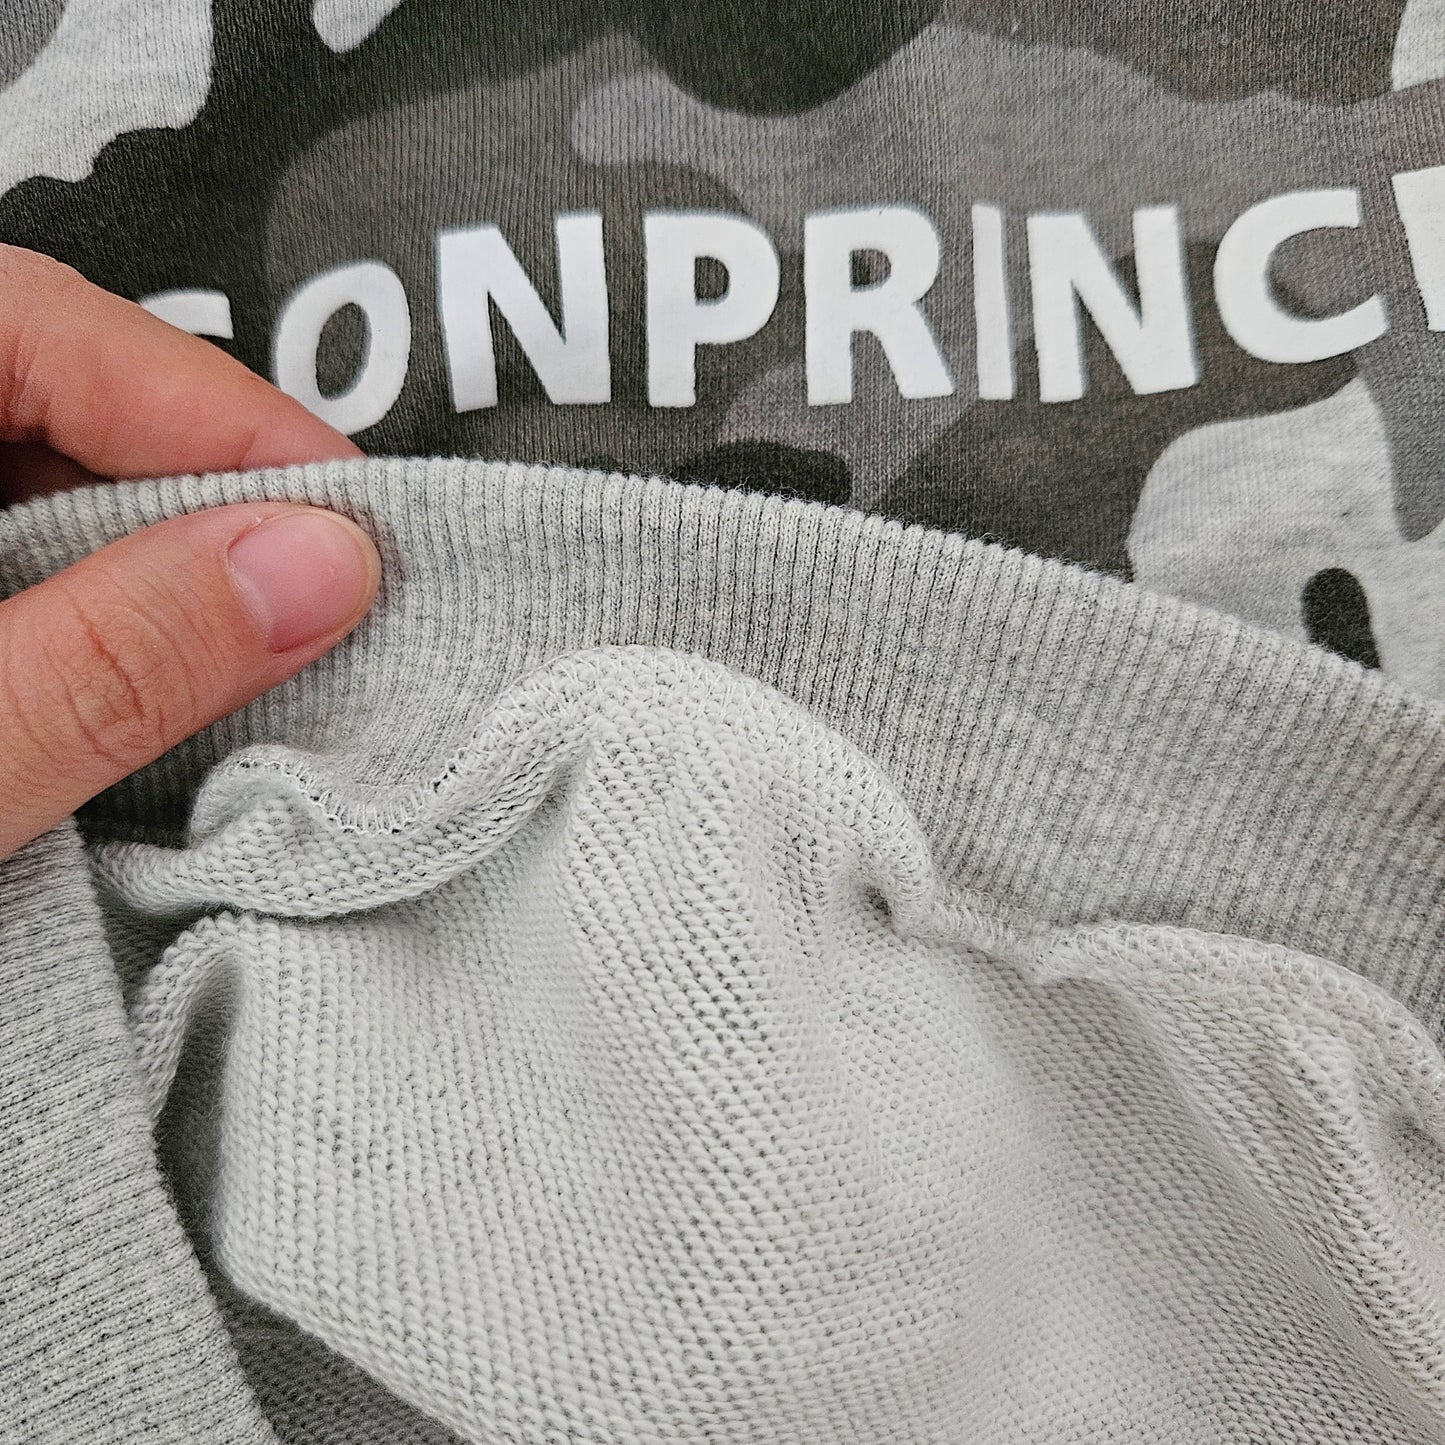 【Promesa】Army Sweatshirt